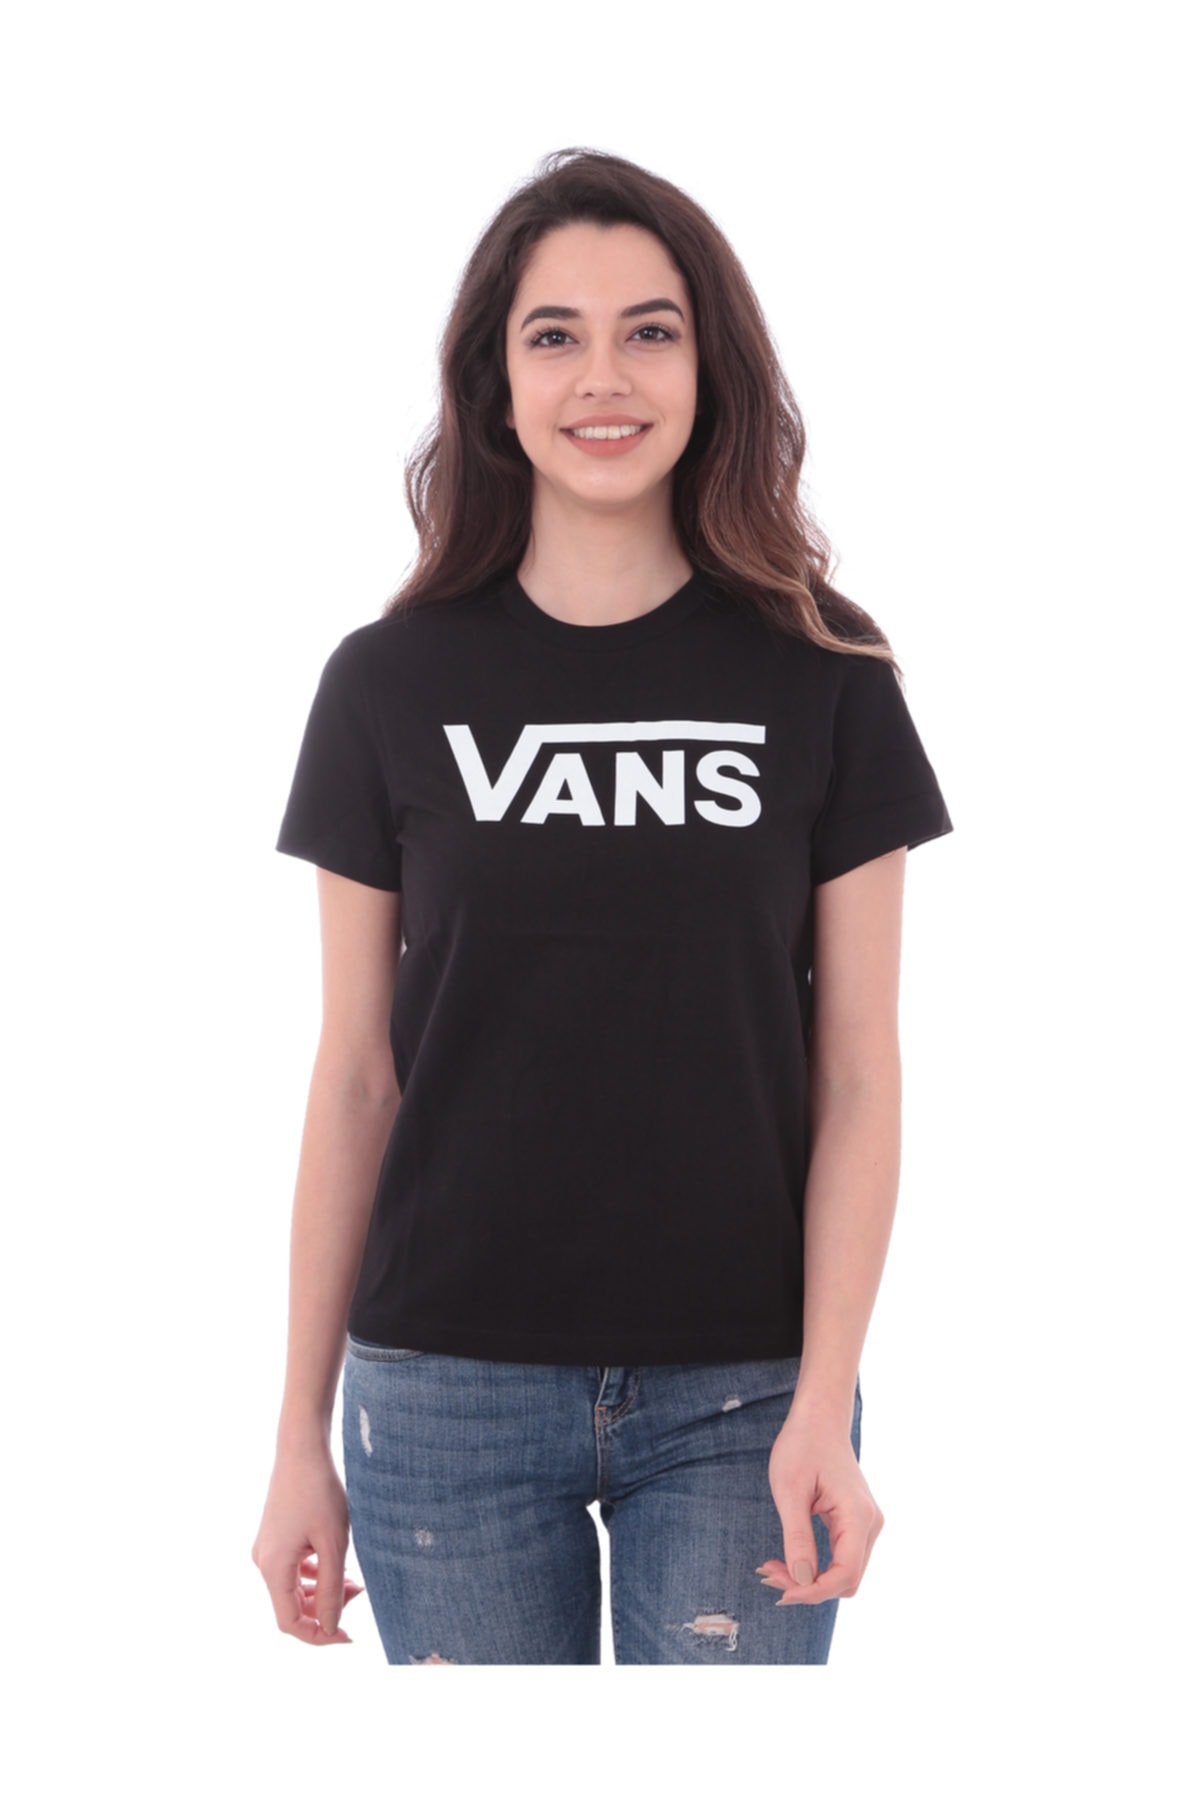 تی شرت زنانه مشکی قابل تنفس  ونس Vans (برند ایالات متحده آمریکا)